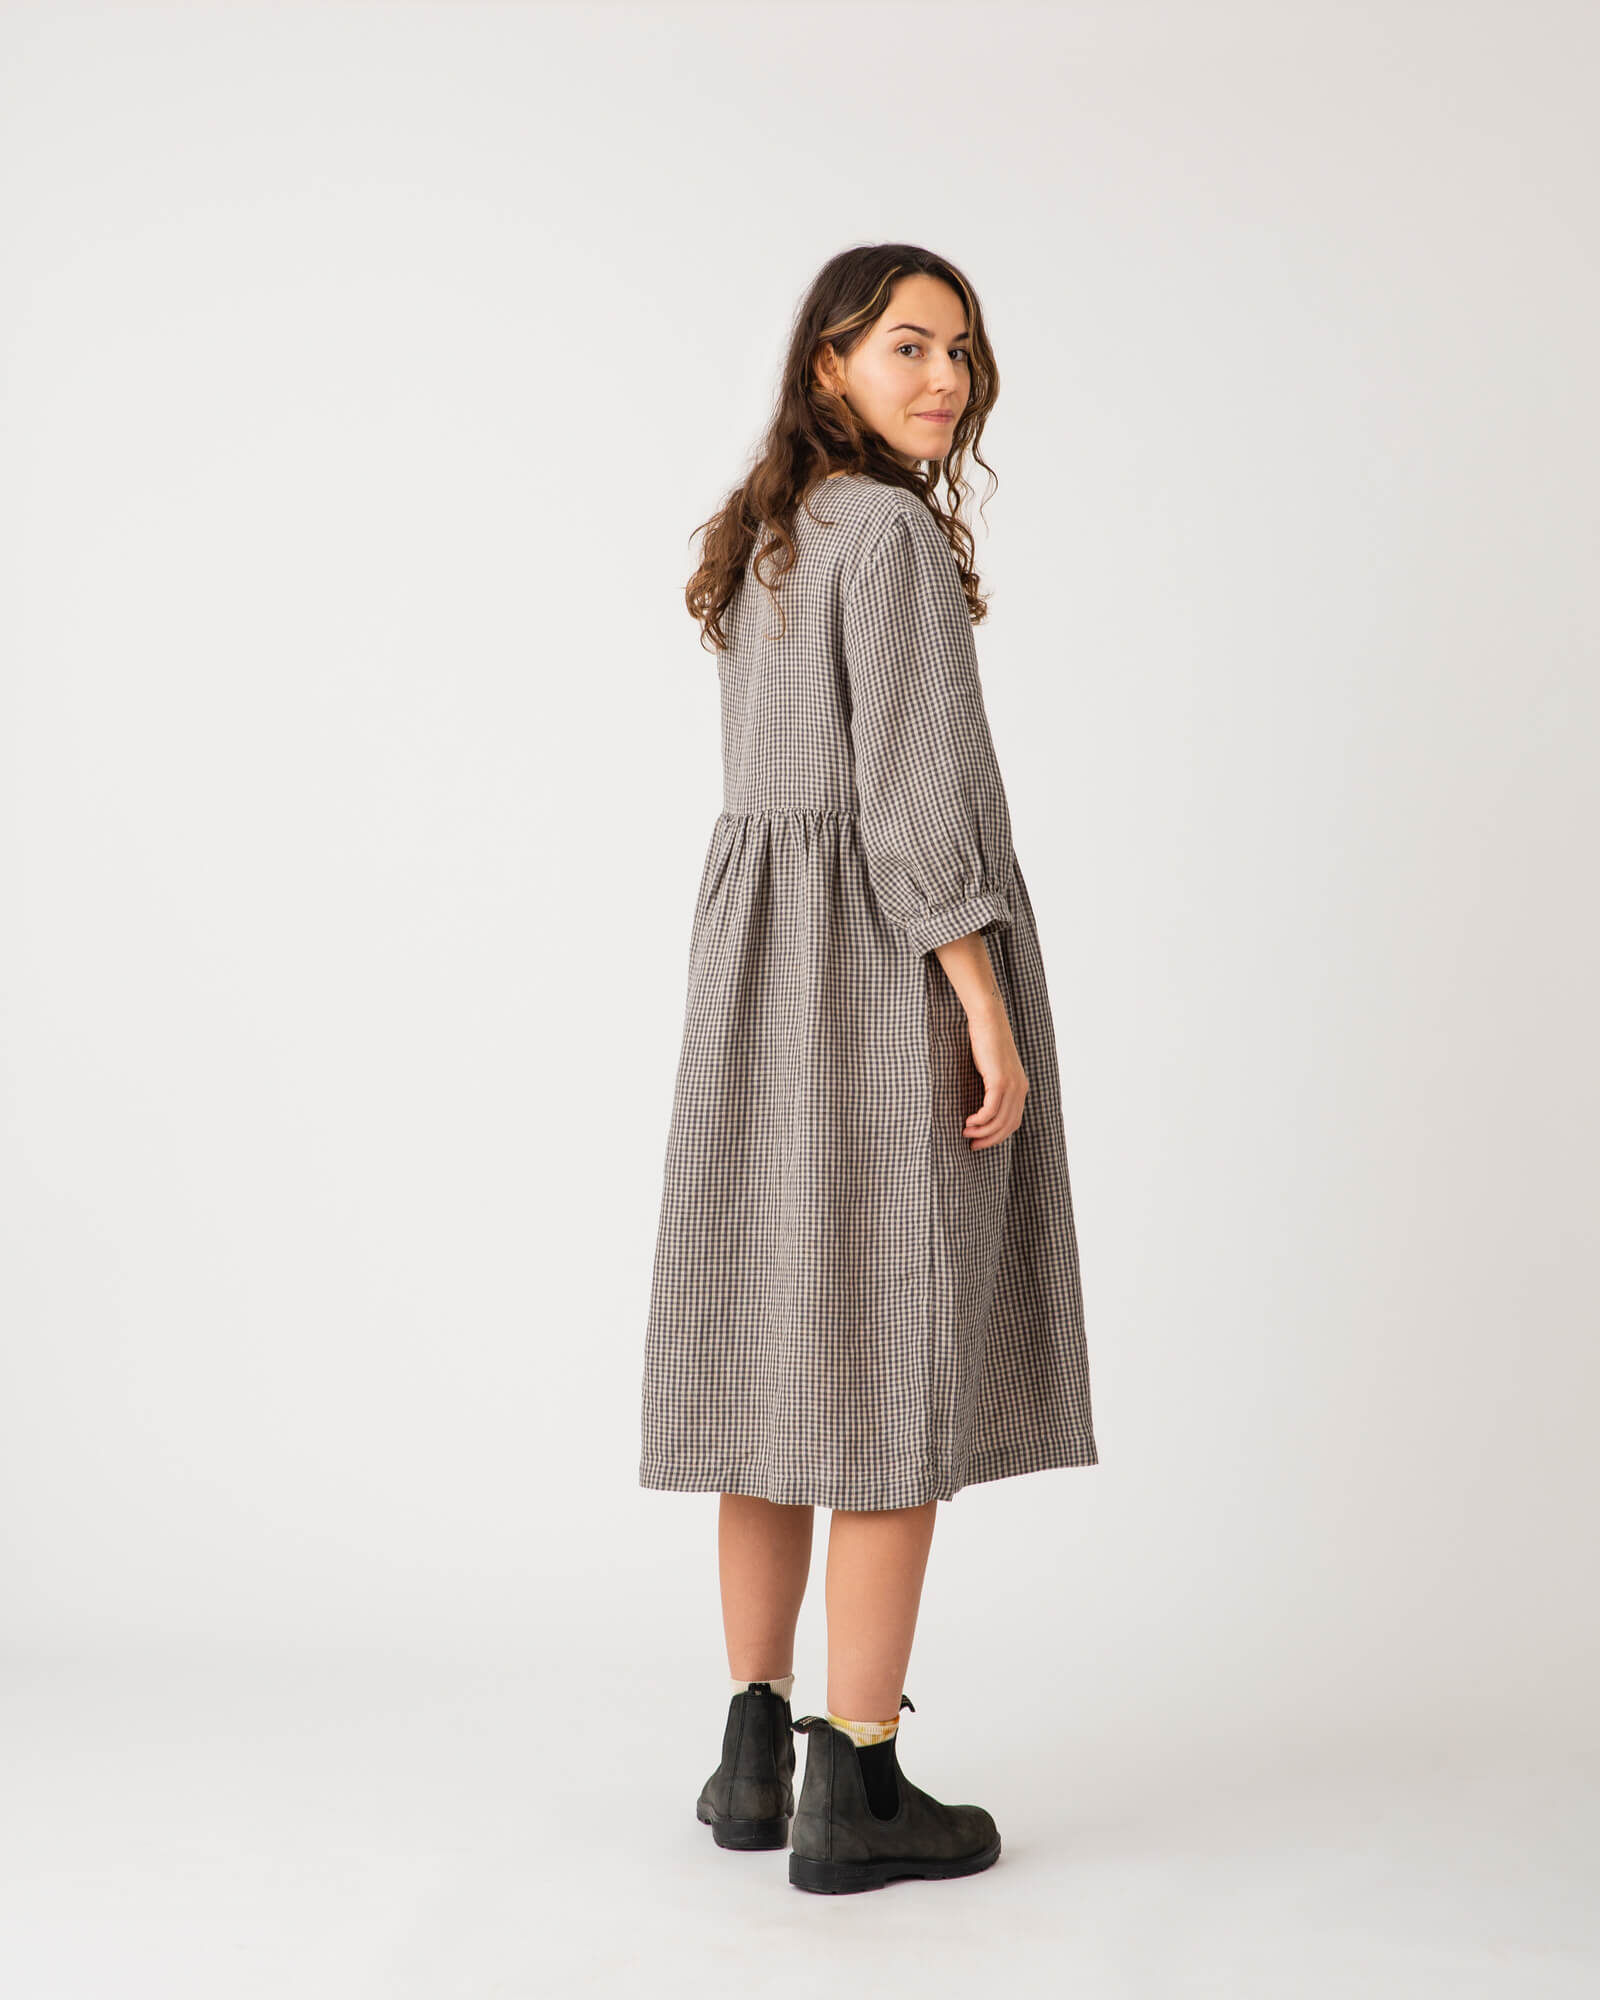 Gray linen vichy dress from Matona